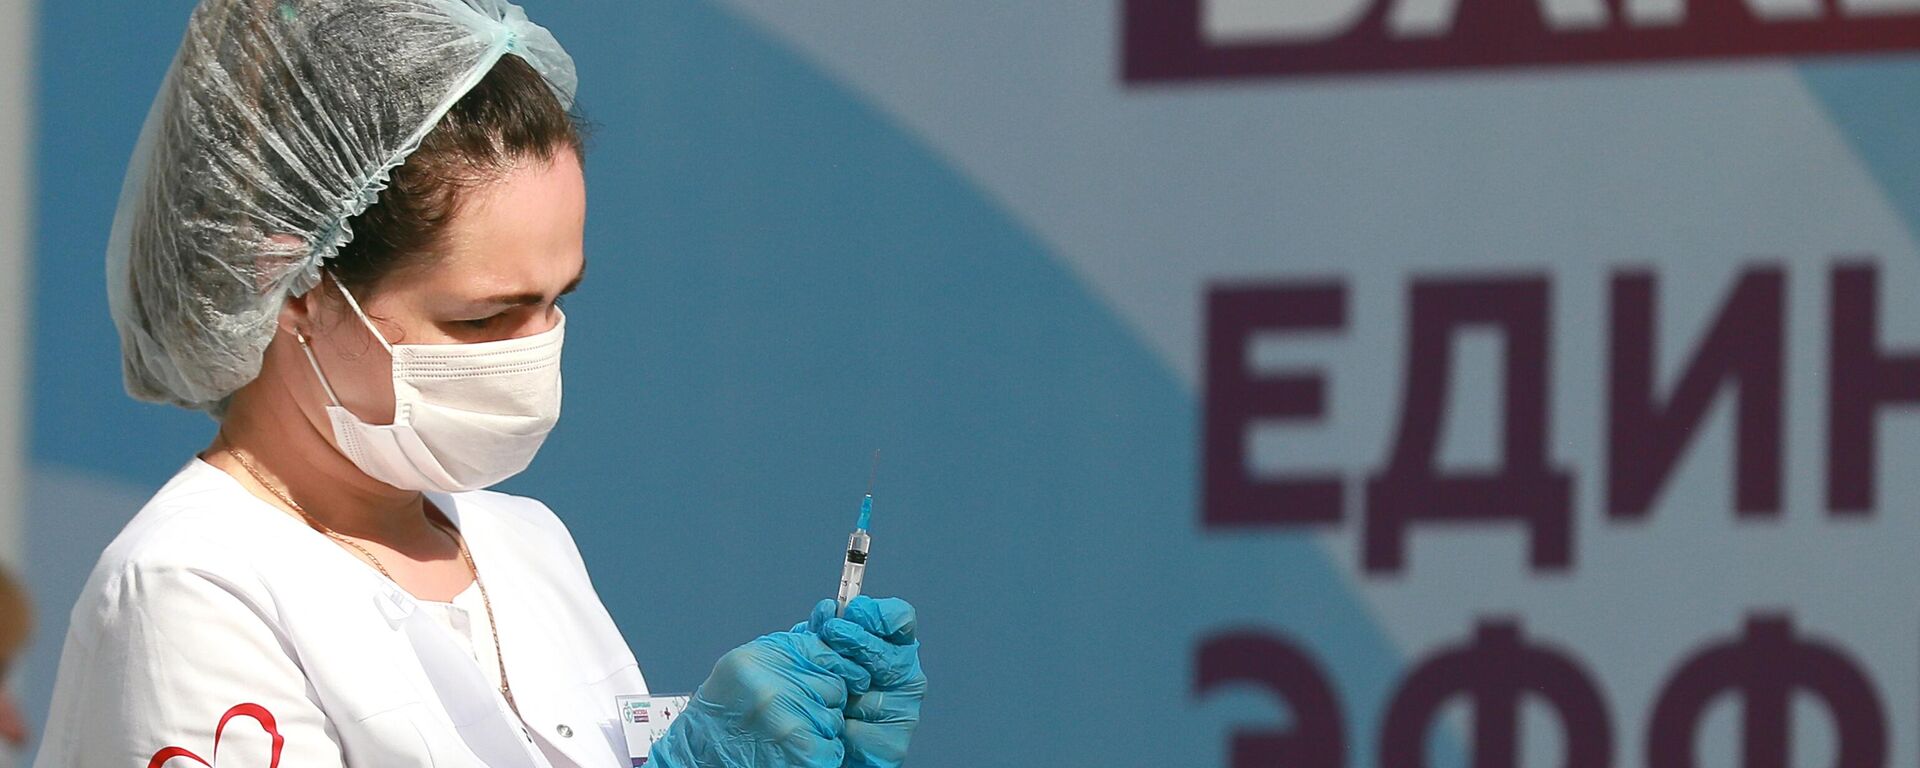 Медицинский работник держит в руках шприц с вакциной Гам-Ковид-Вак (Спутник V) от COVID-19 - Sputnik Latvija, 1920, 25.09.2021